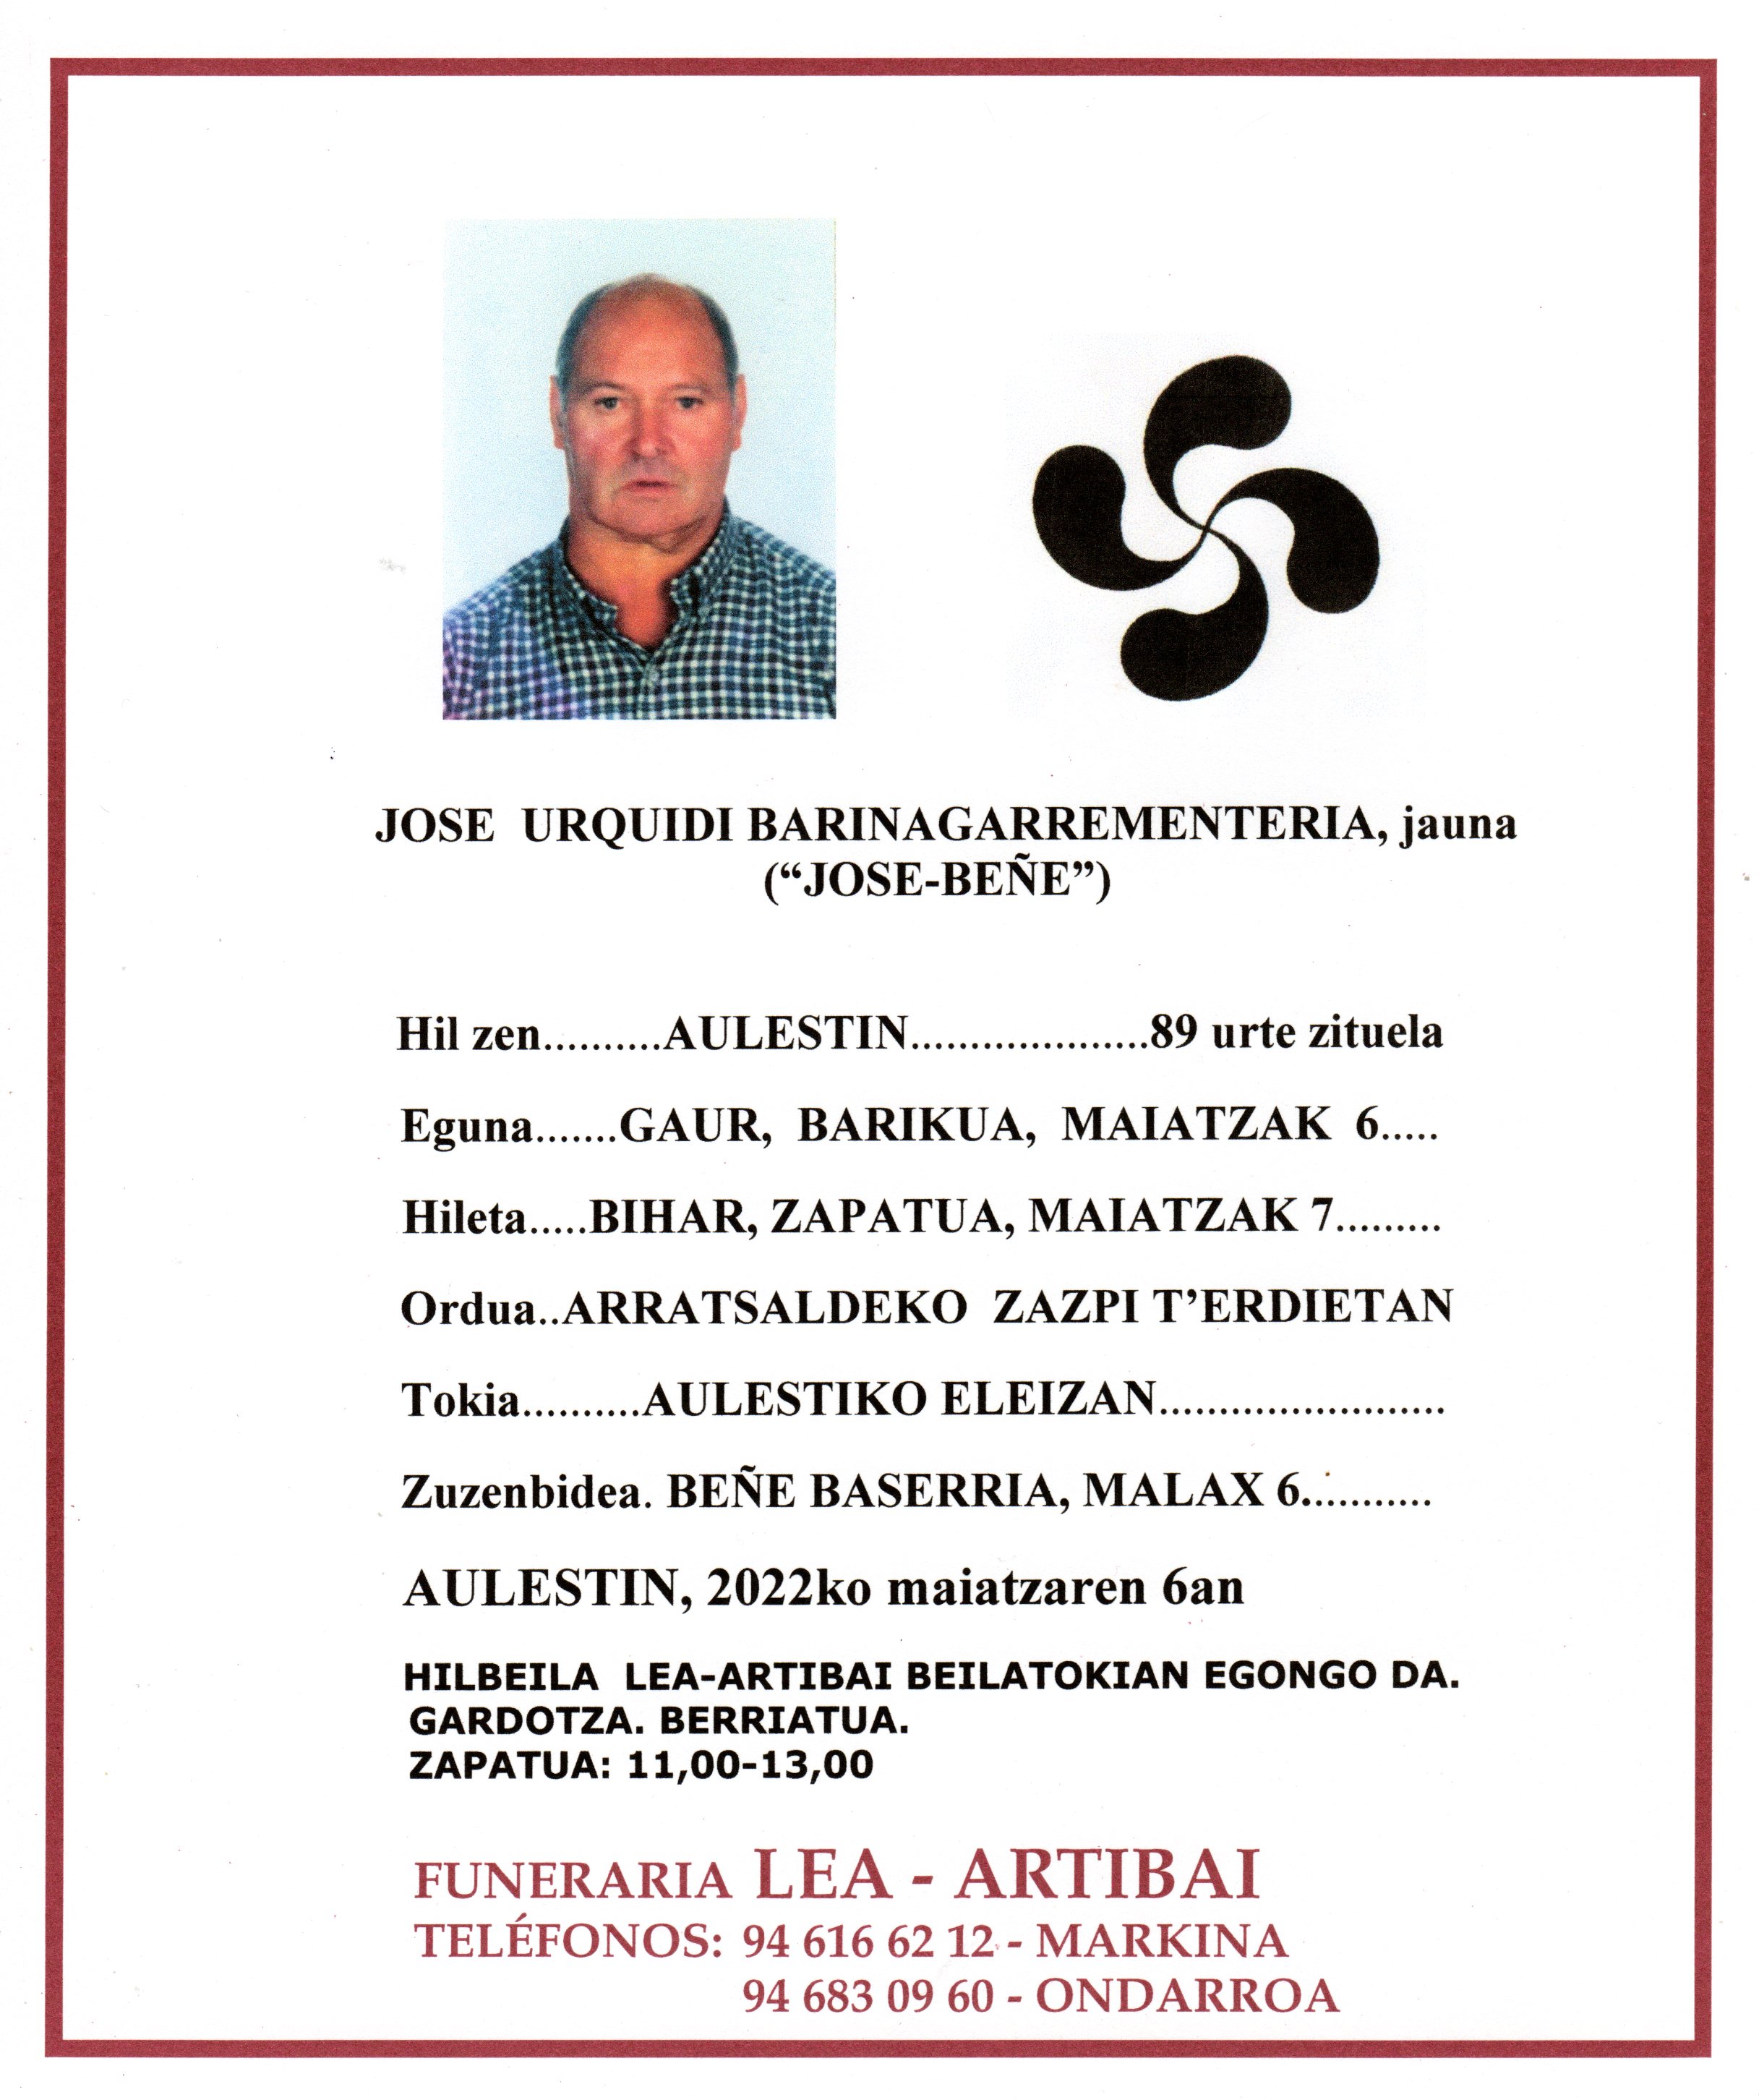 Jose Urquidi Barinagarrementeria